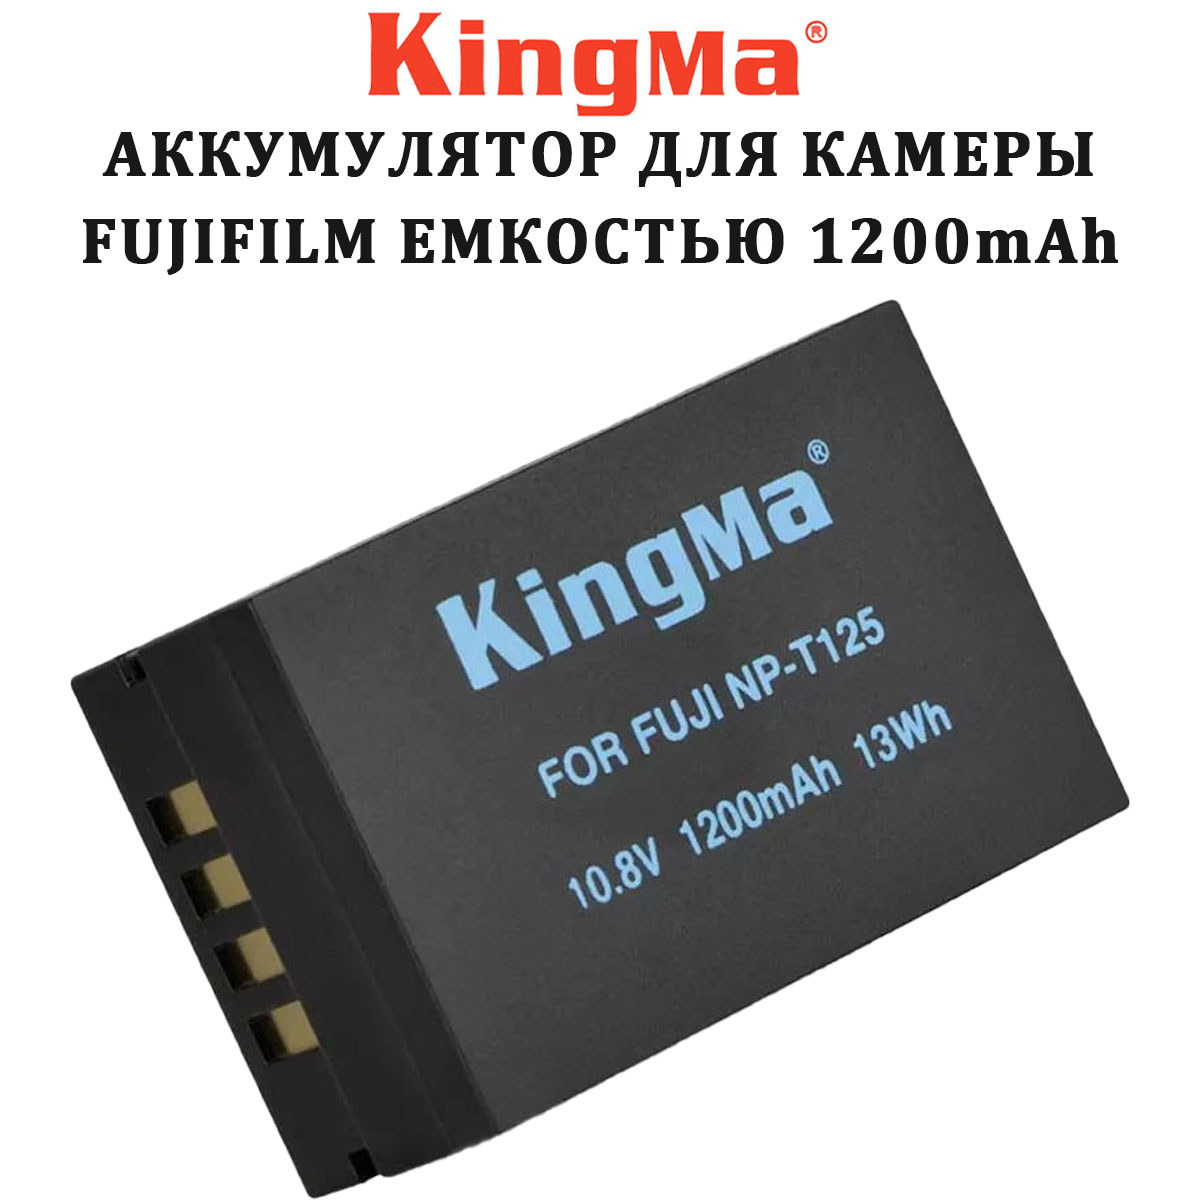 Аккумулятор Kingma NP-T125 1200mAh для Fujifilm